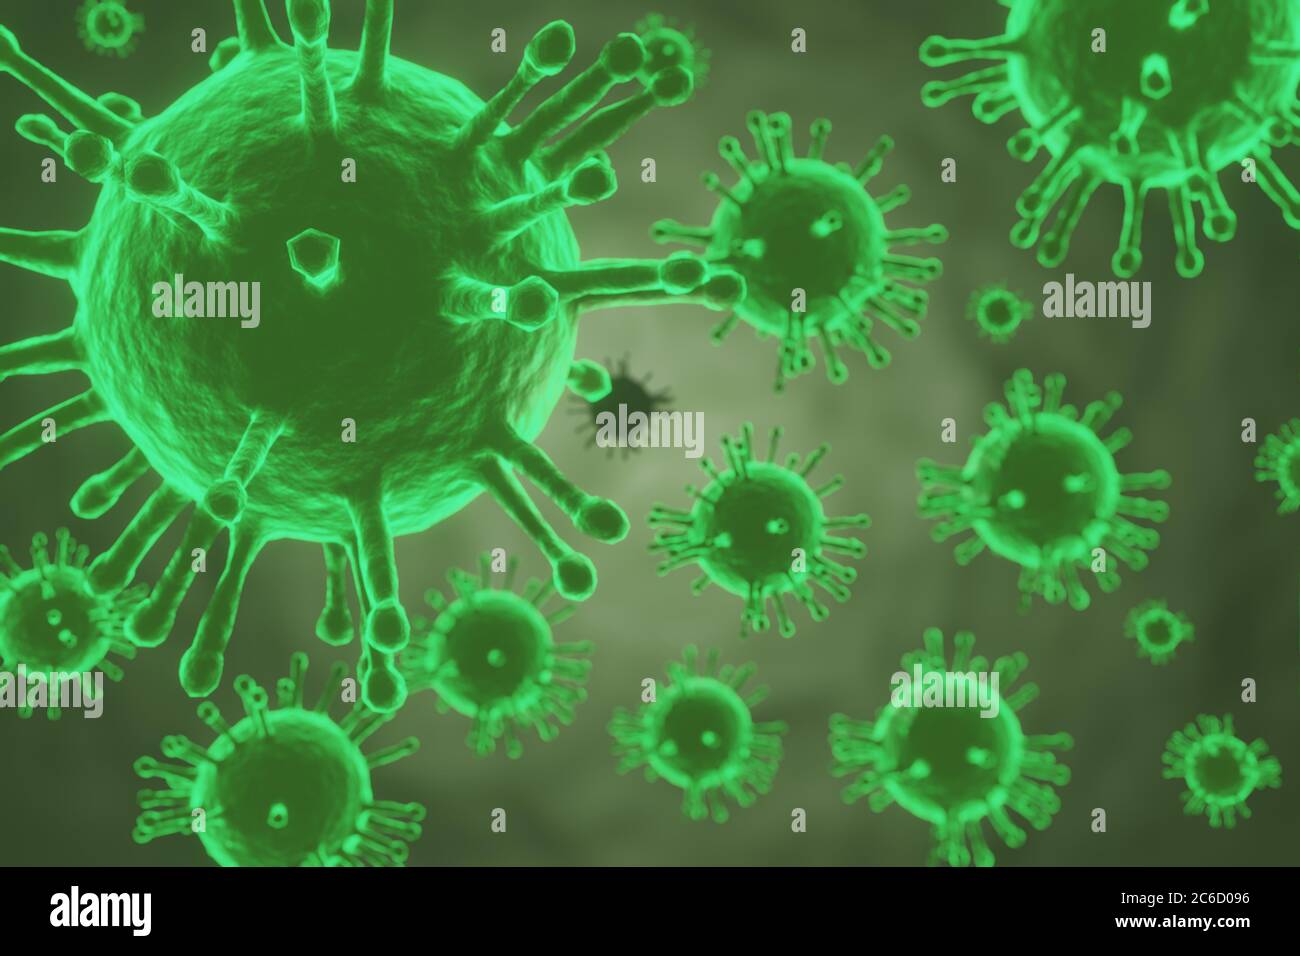 Bilder von Influenza-Virus-Zellen COVID-19. Banner Hintergrund Coronavirus Covid-19 Influenza Pandemic Cell Disease Crisis Medical Health in 3D Stockfoto